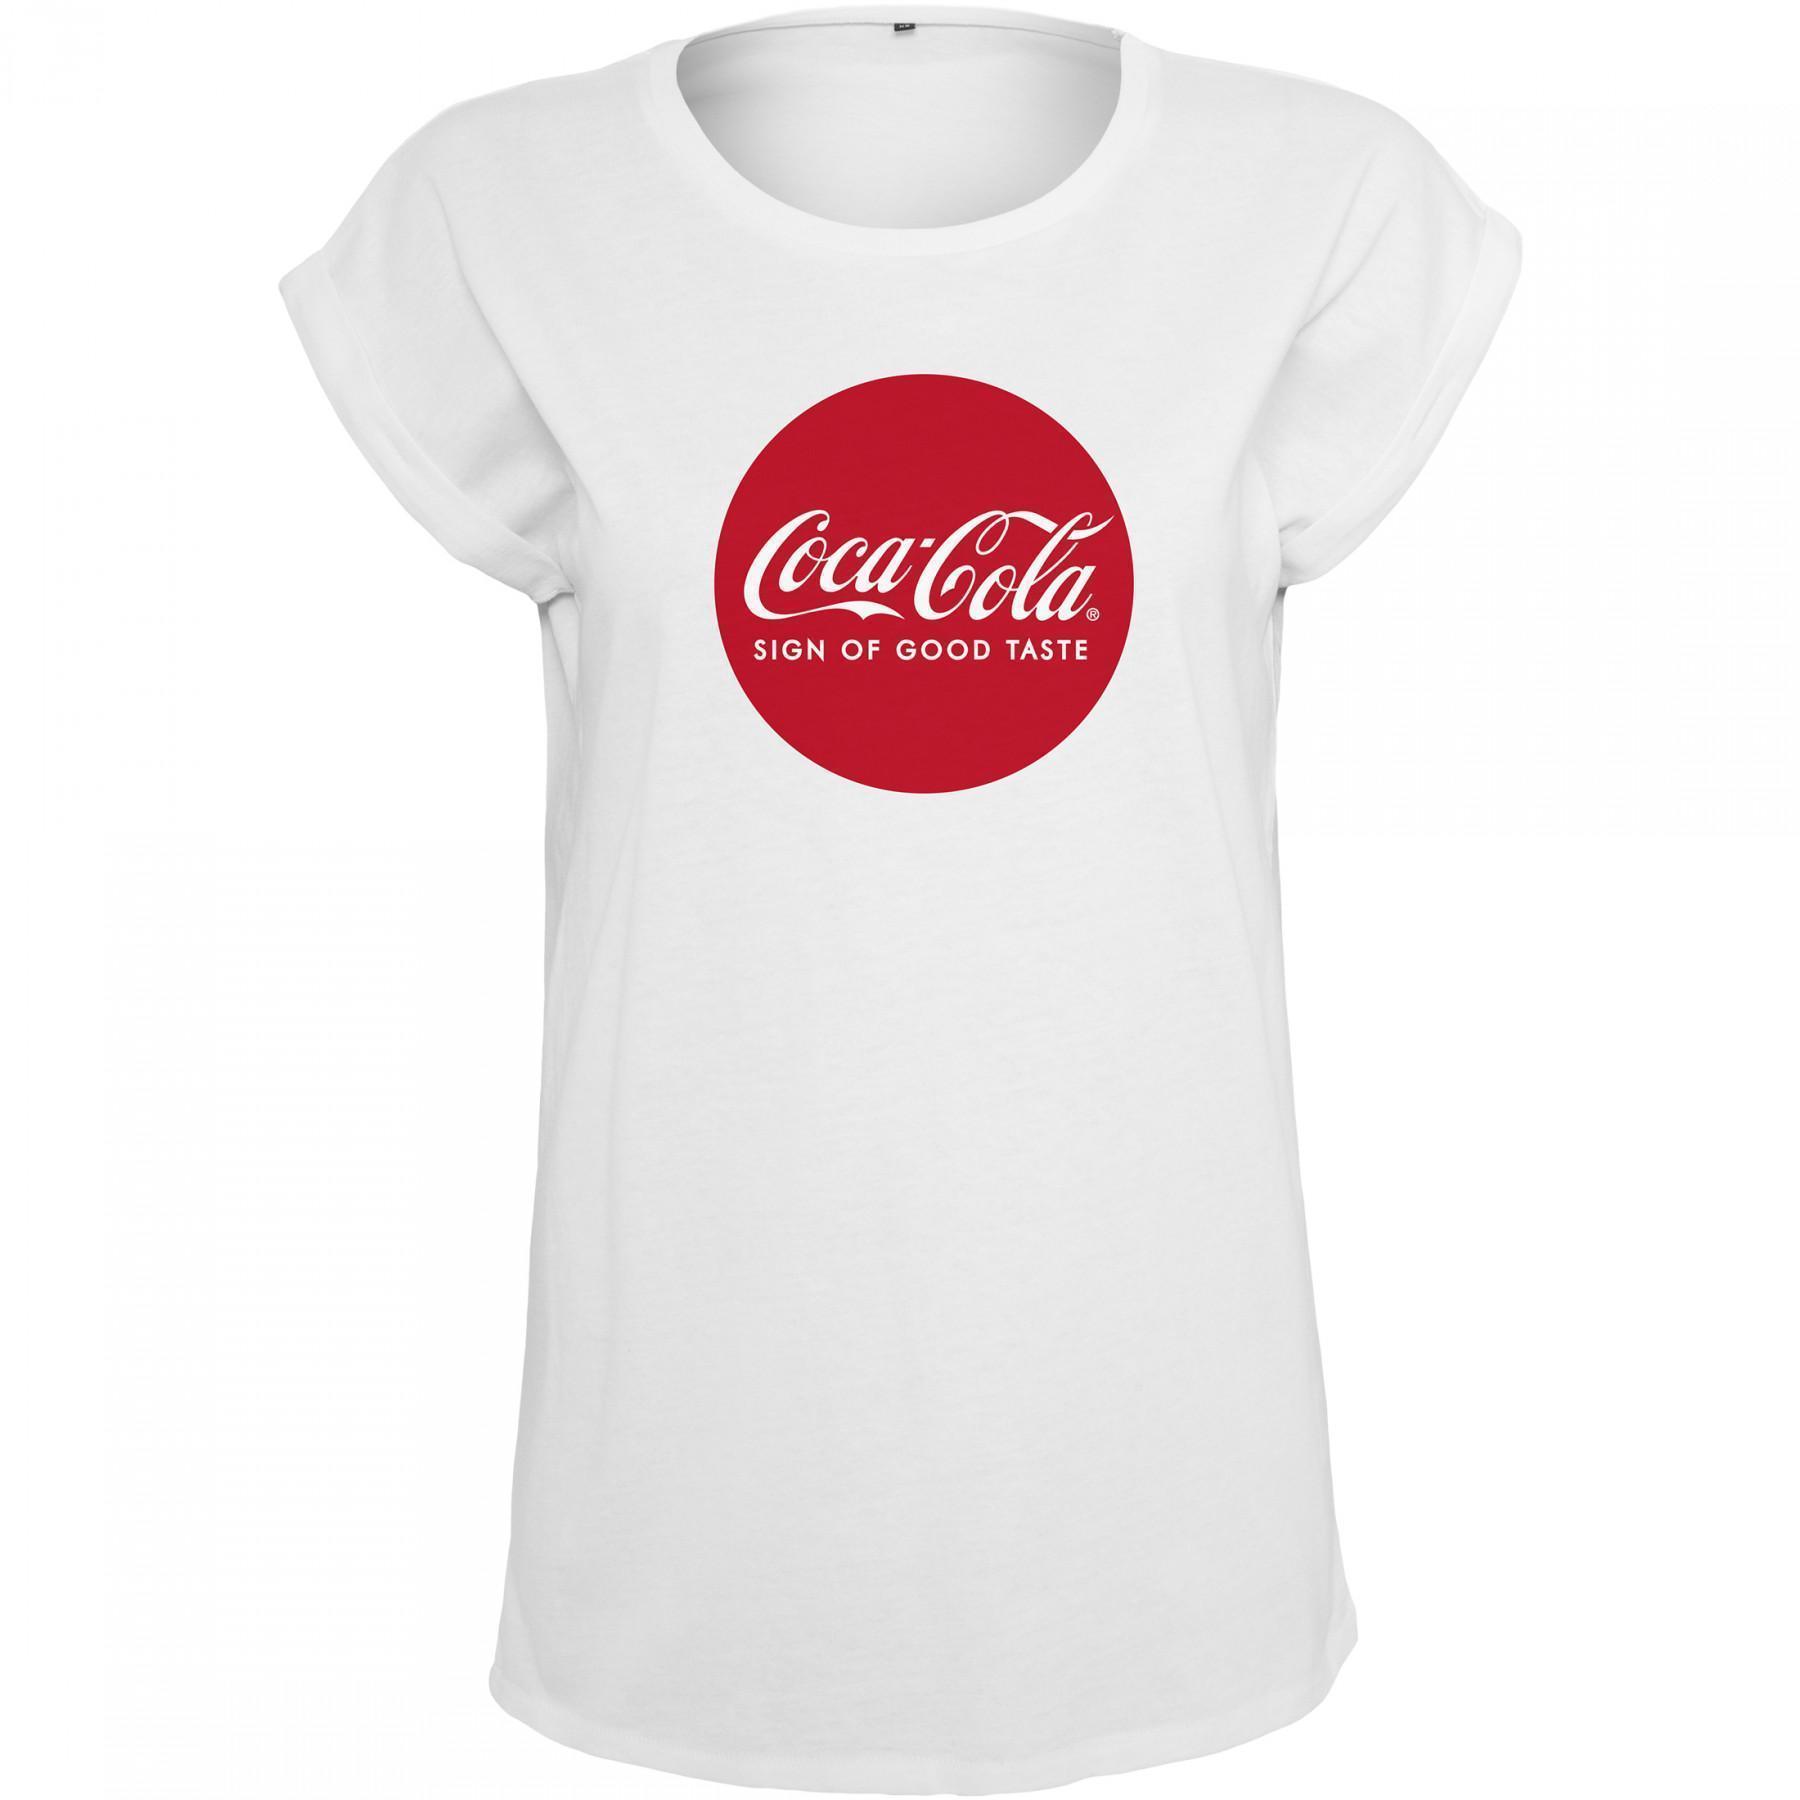 Maglietta da donna Urban Classic coca cola logo rotondo